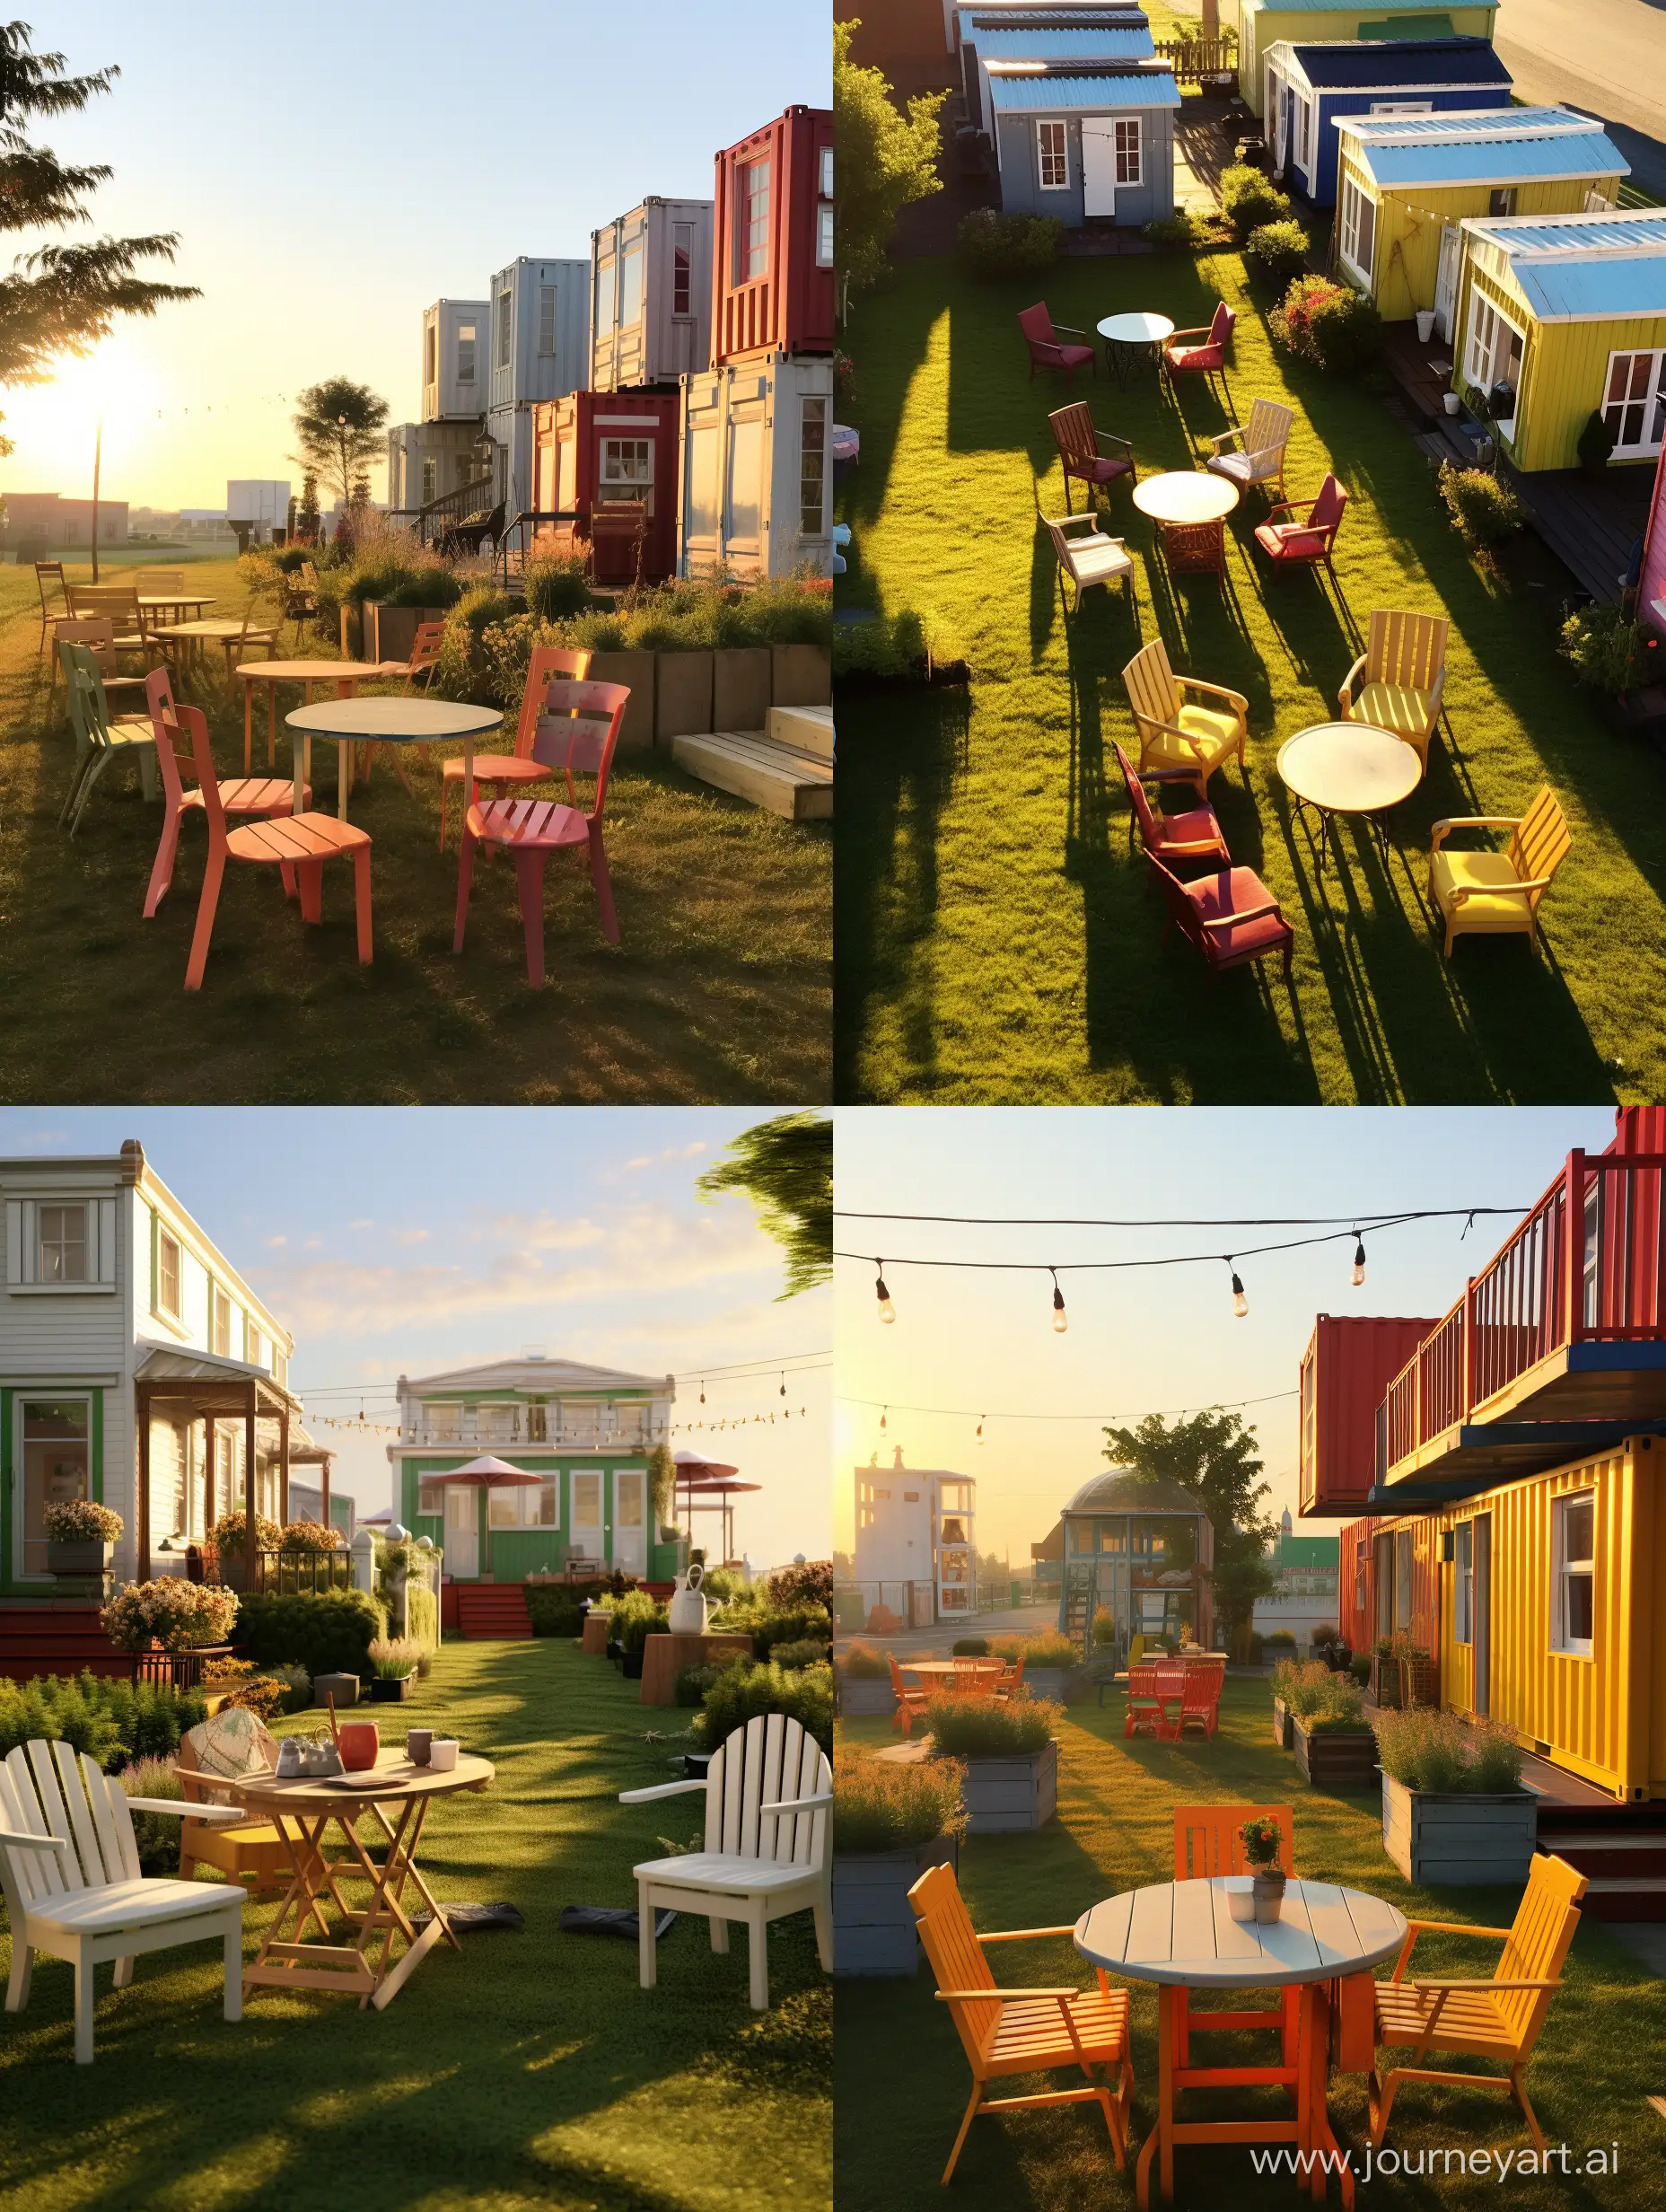 清晨阳光明媚的时刻，草坪上摆放着集装箱民宿，集装箱的整体颜色是白色，屋顶带有露台，房屋边上摆放着喝茶的桌椅板凳